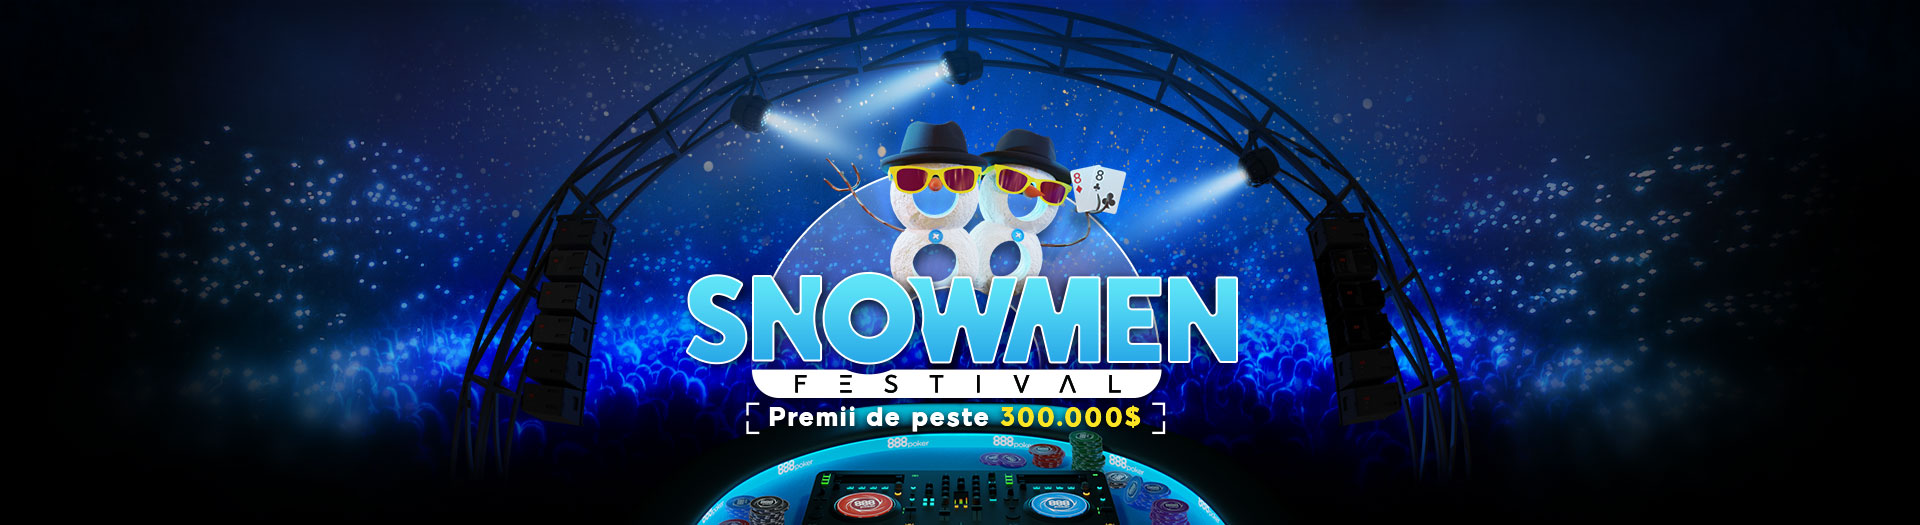 Snowmen Festival  